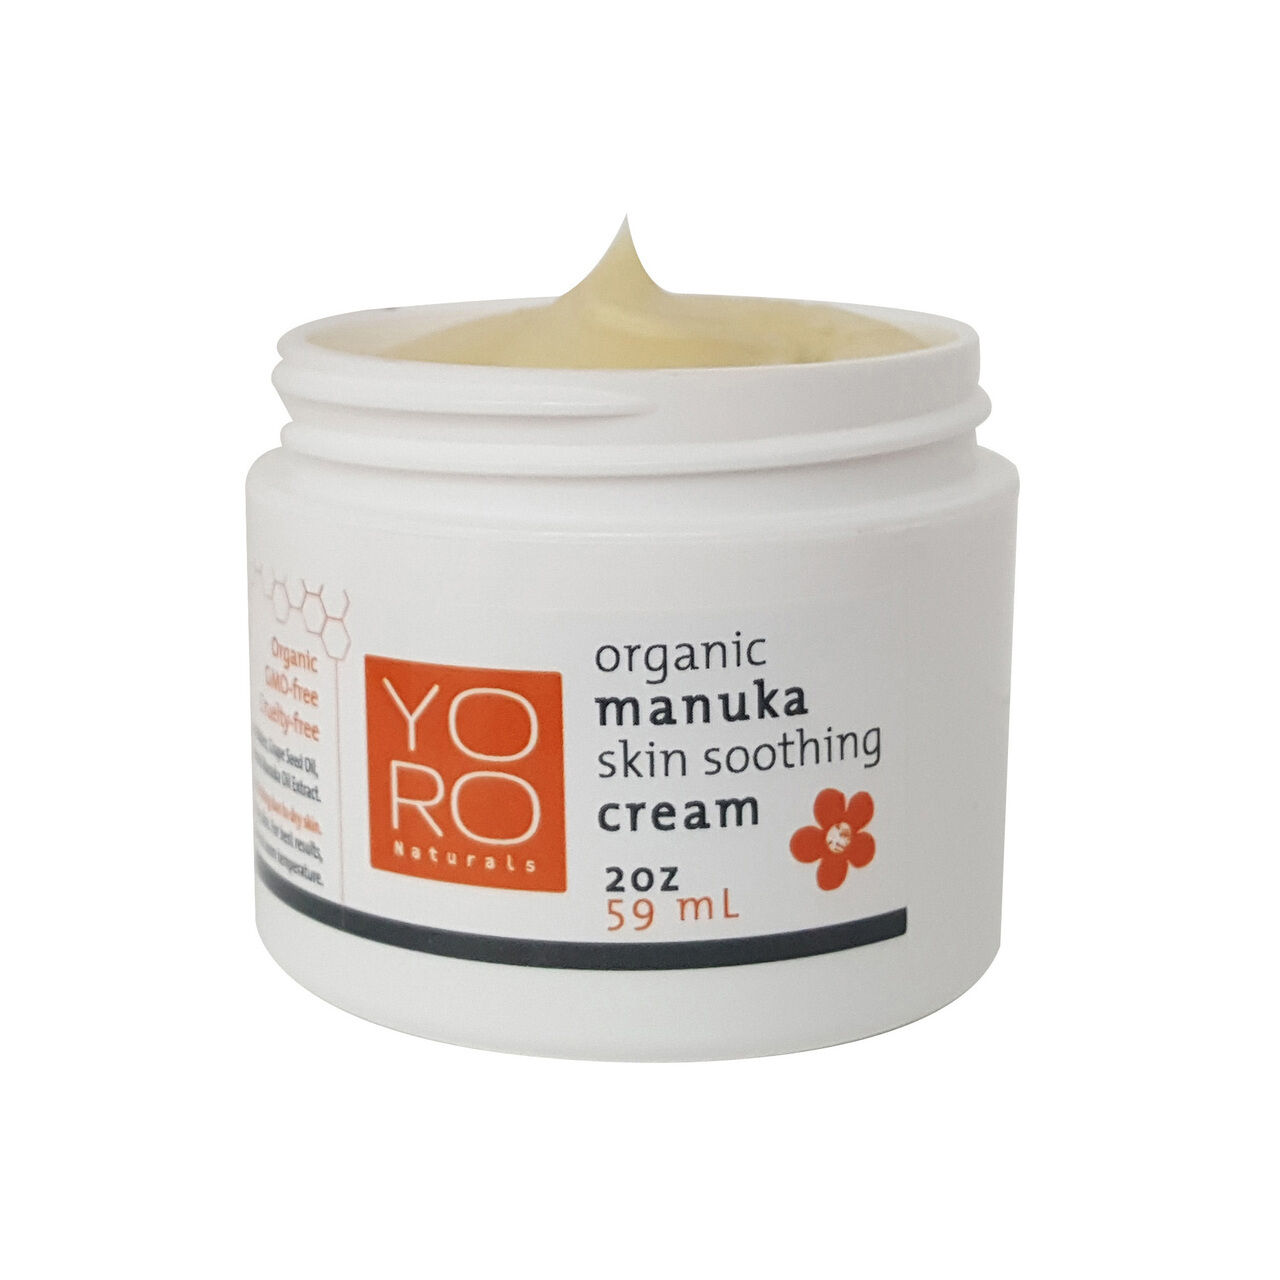 YoRo Naturals - Organic Manuka Skin Soothing Cream